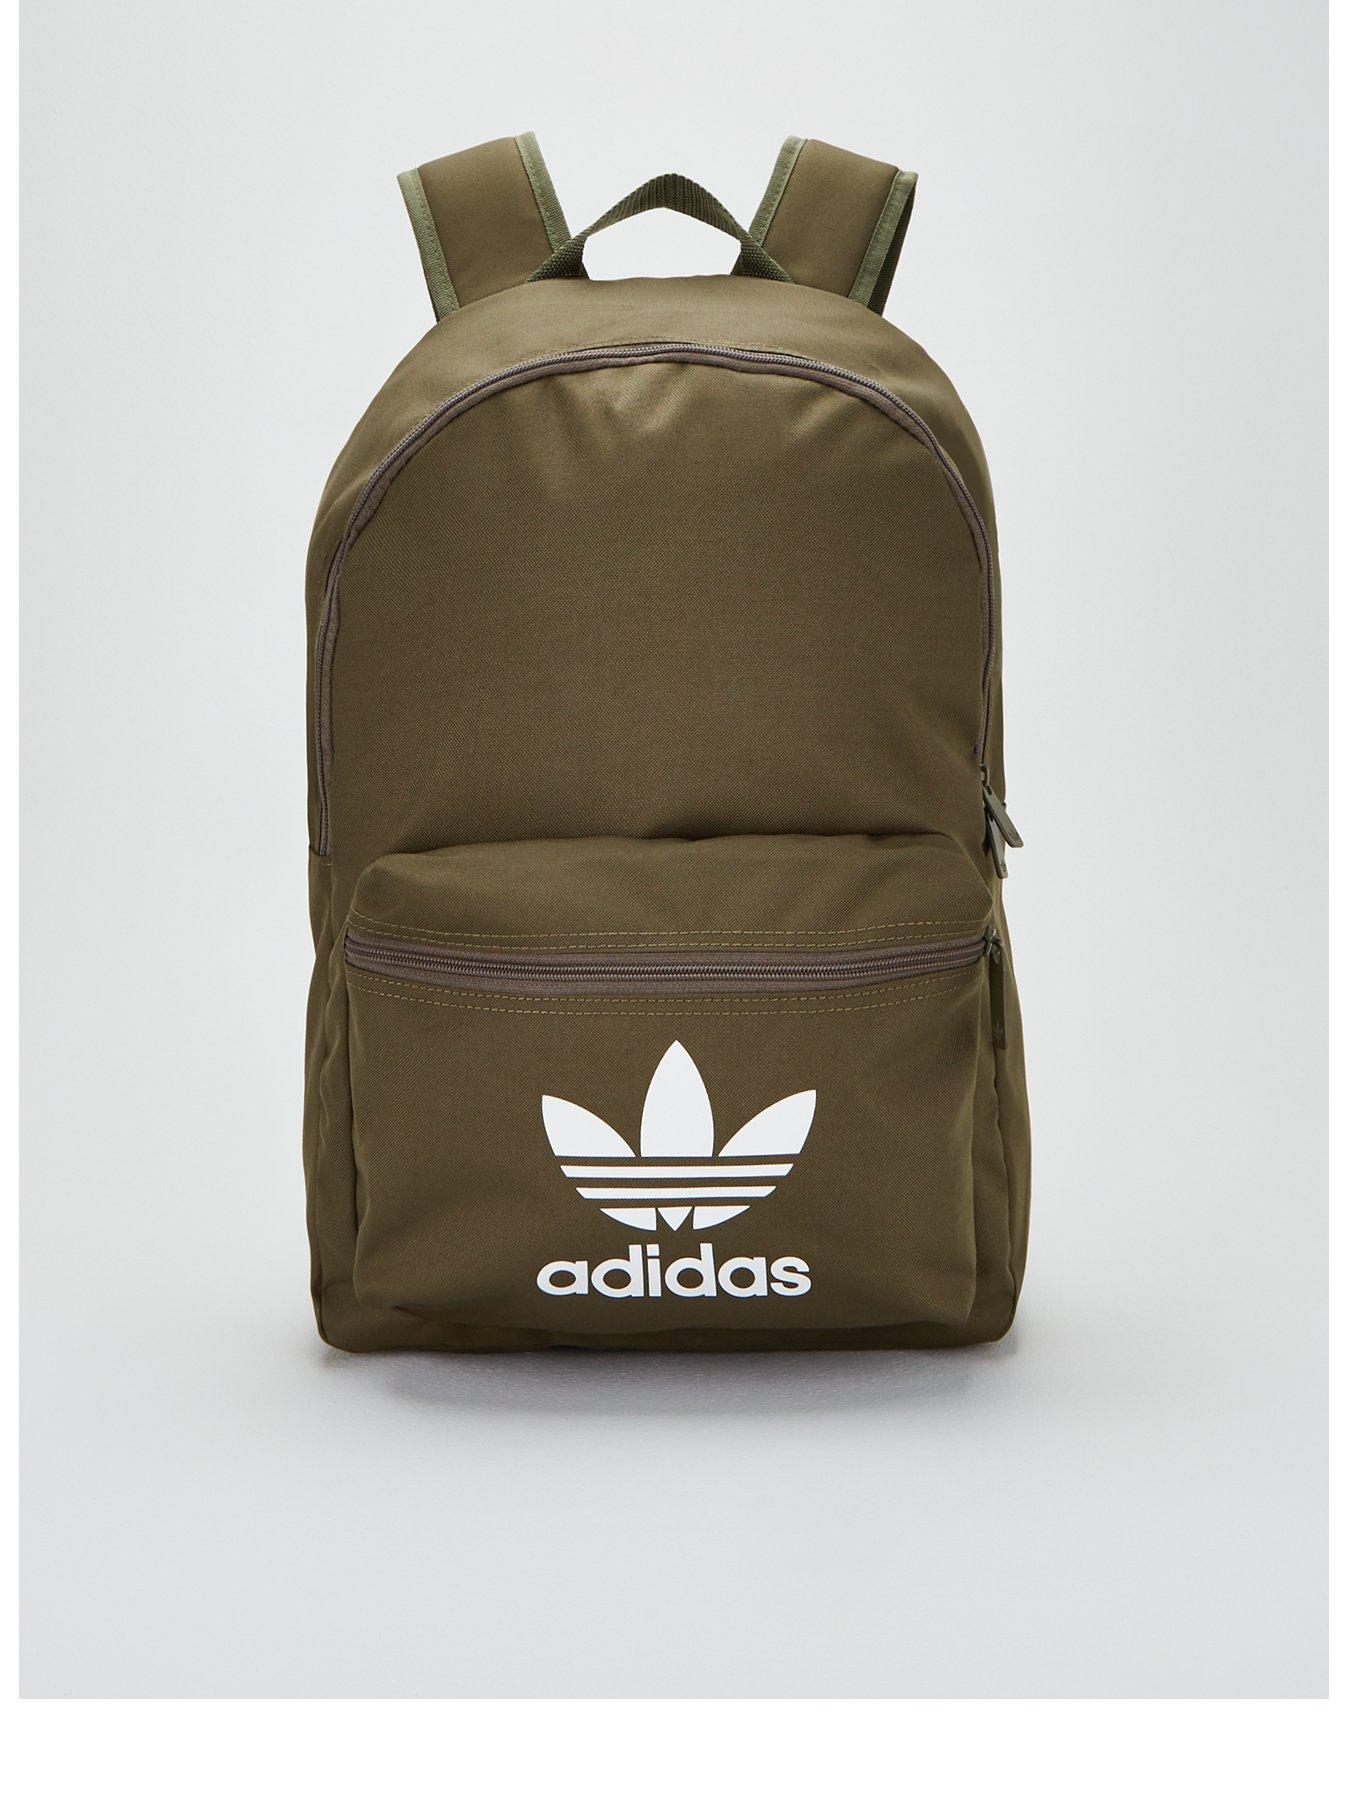 adidas backpack khaki